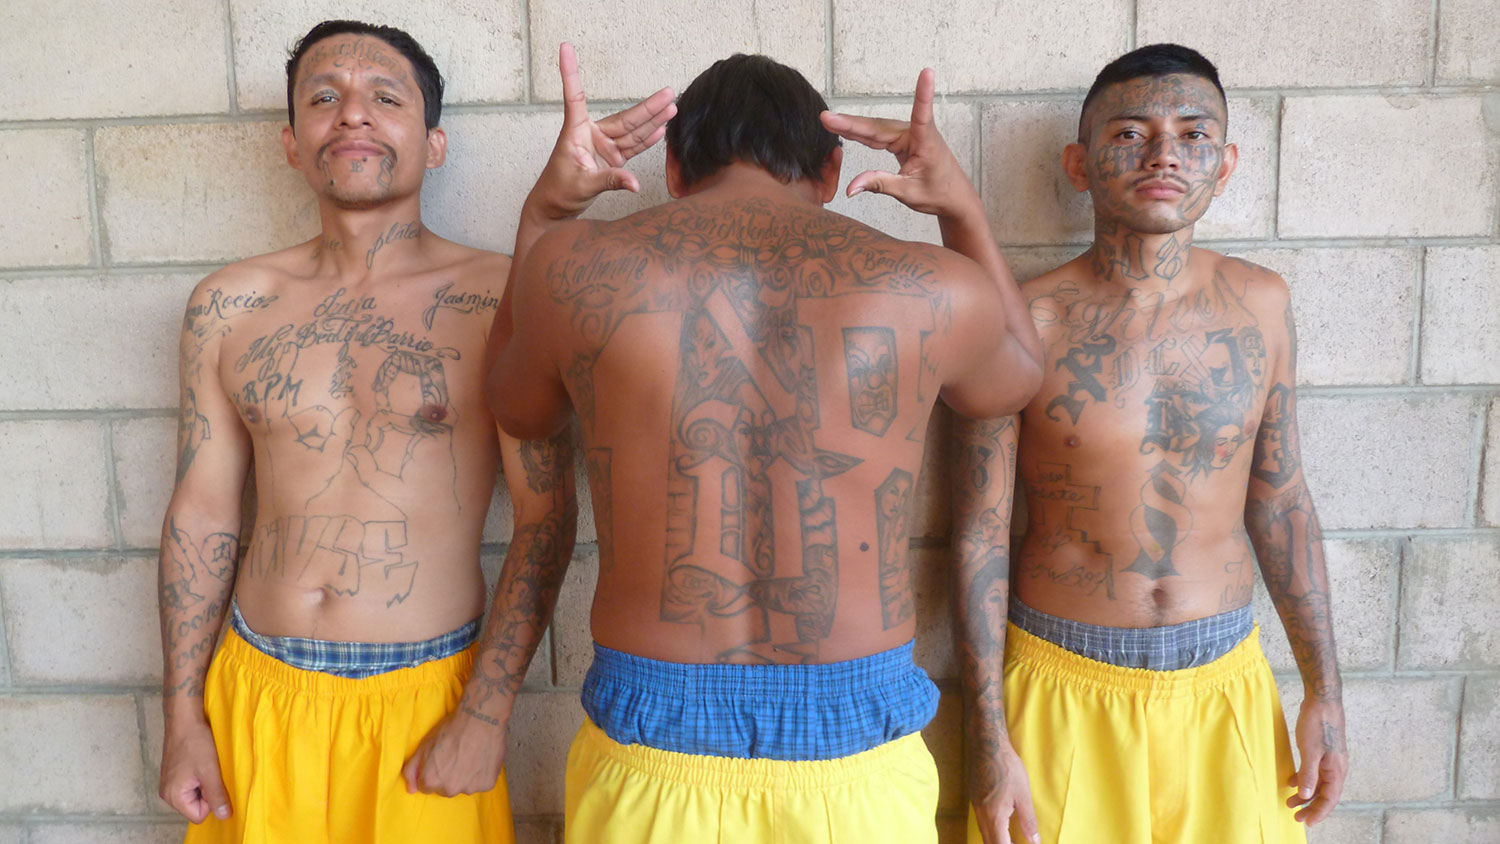 18th street gang, El Salvador